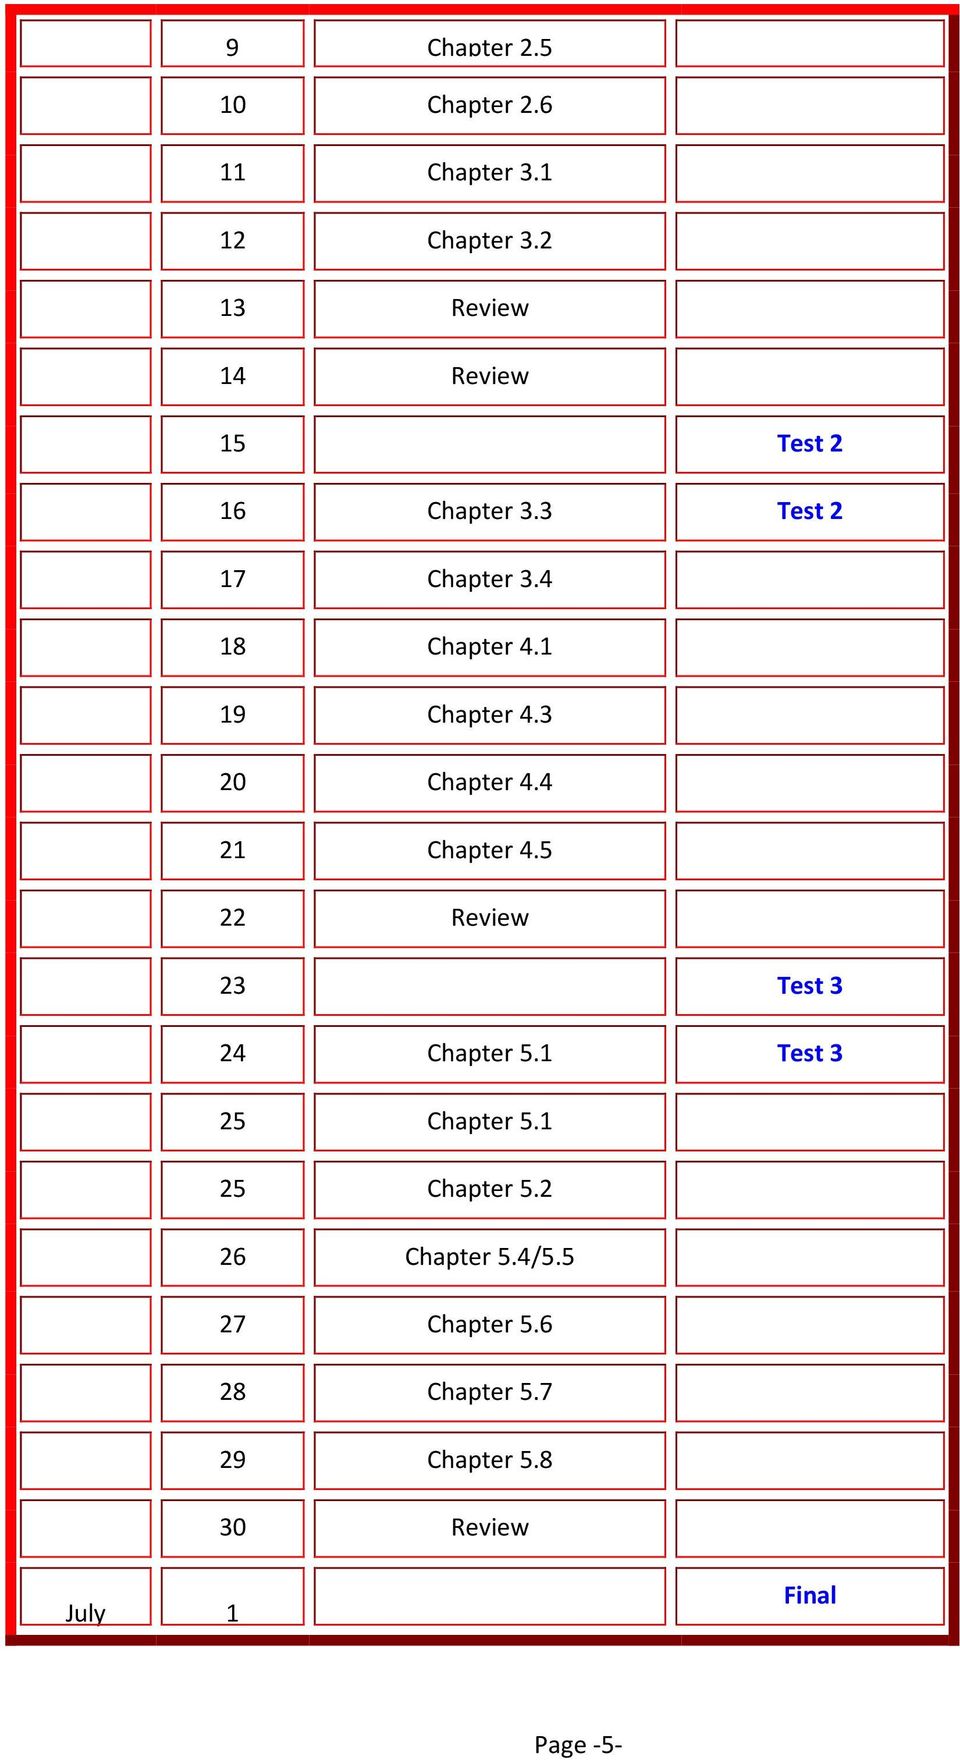 1 19 Chapter 4.3 20 Chapter 4.4 21 Chapter 4.5 22 Review 23 Test 3 24 Chapter 5.